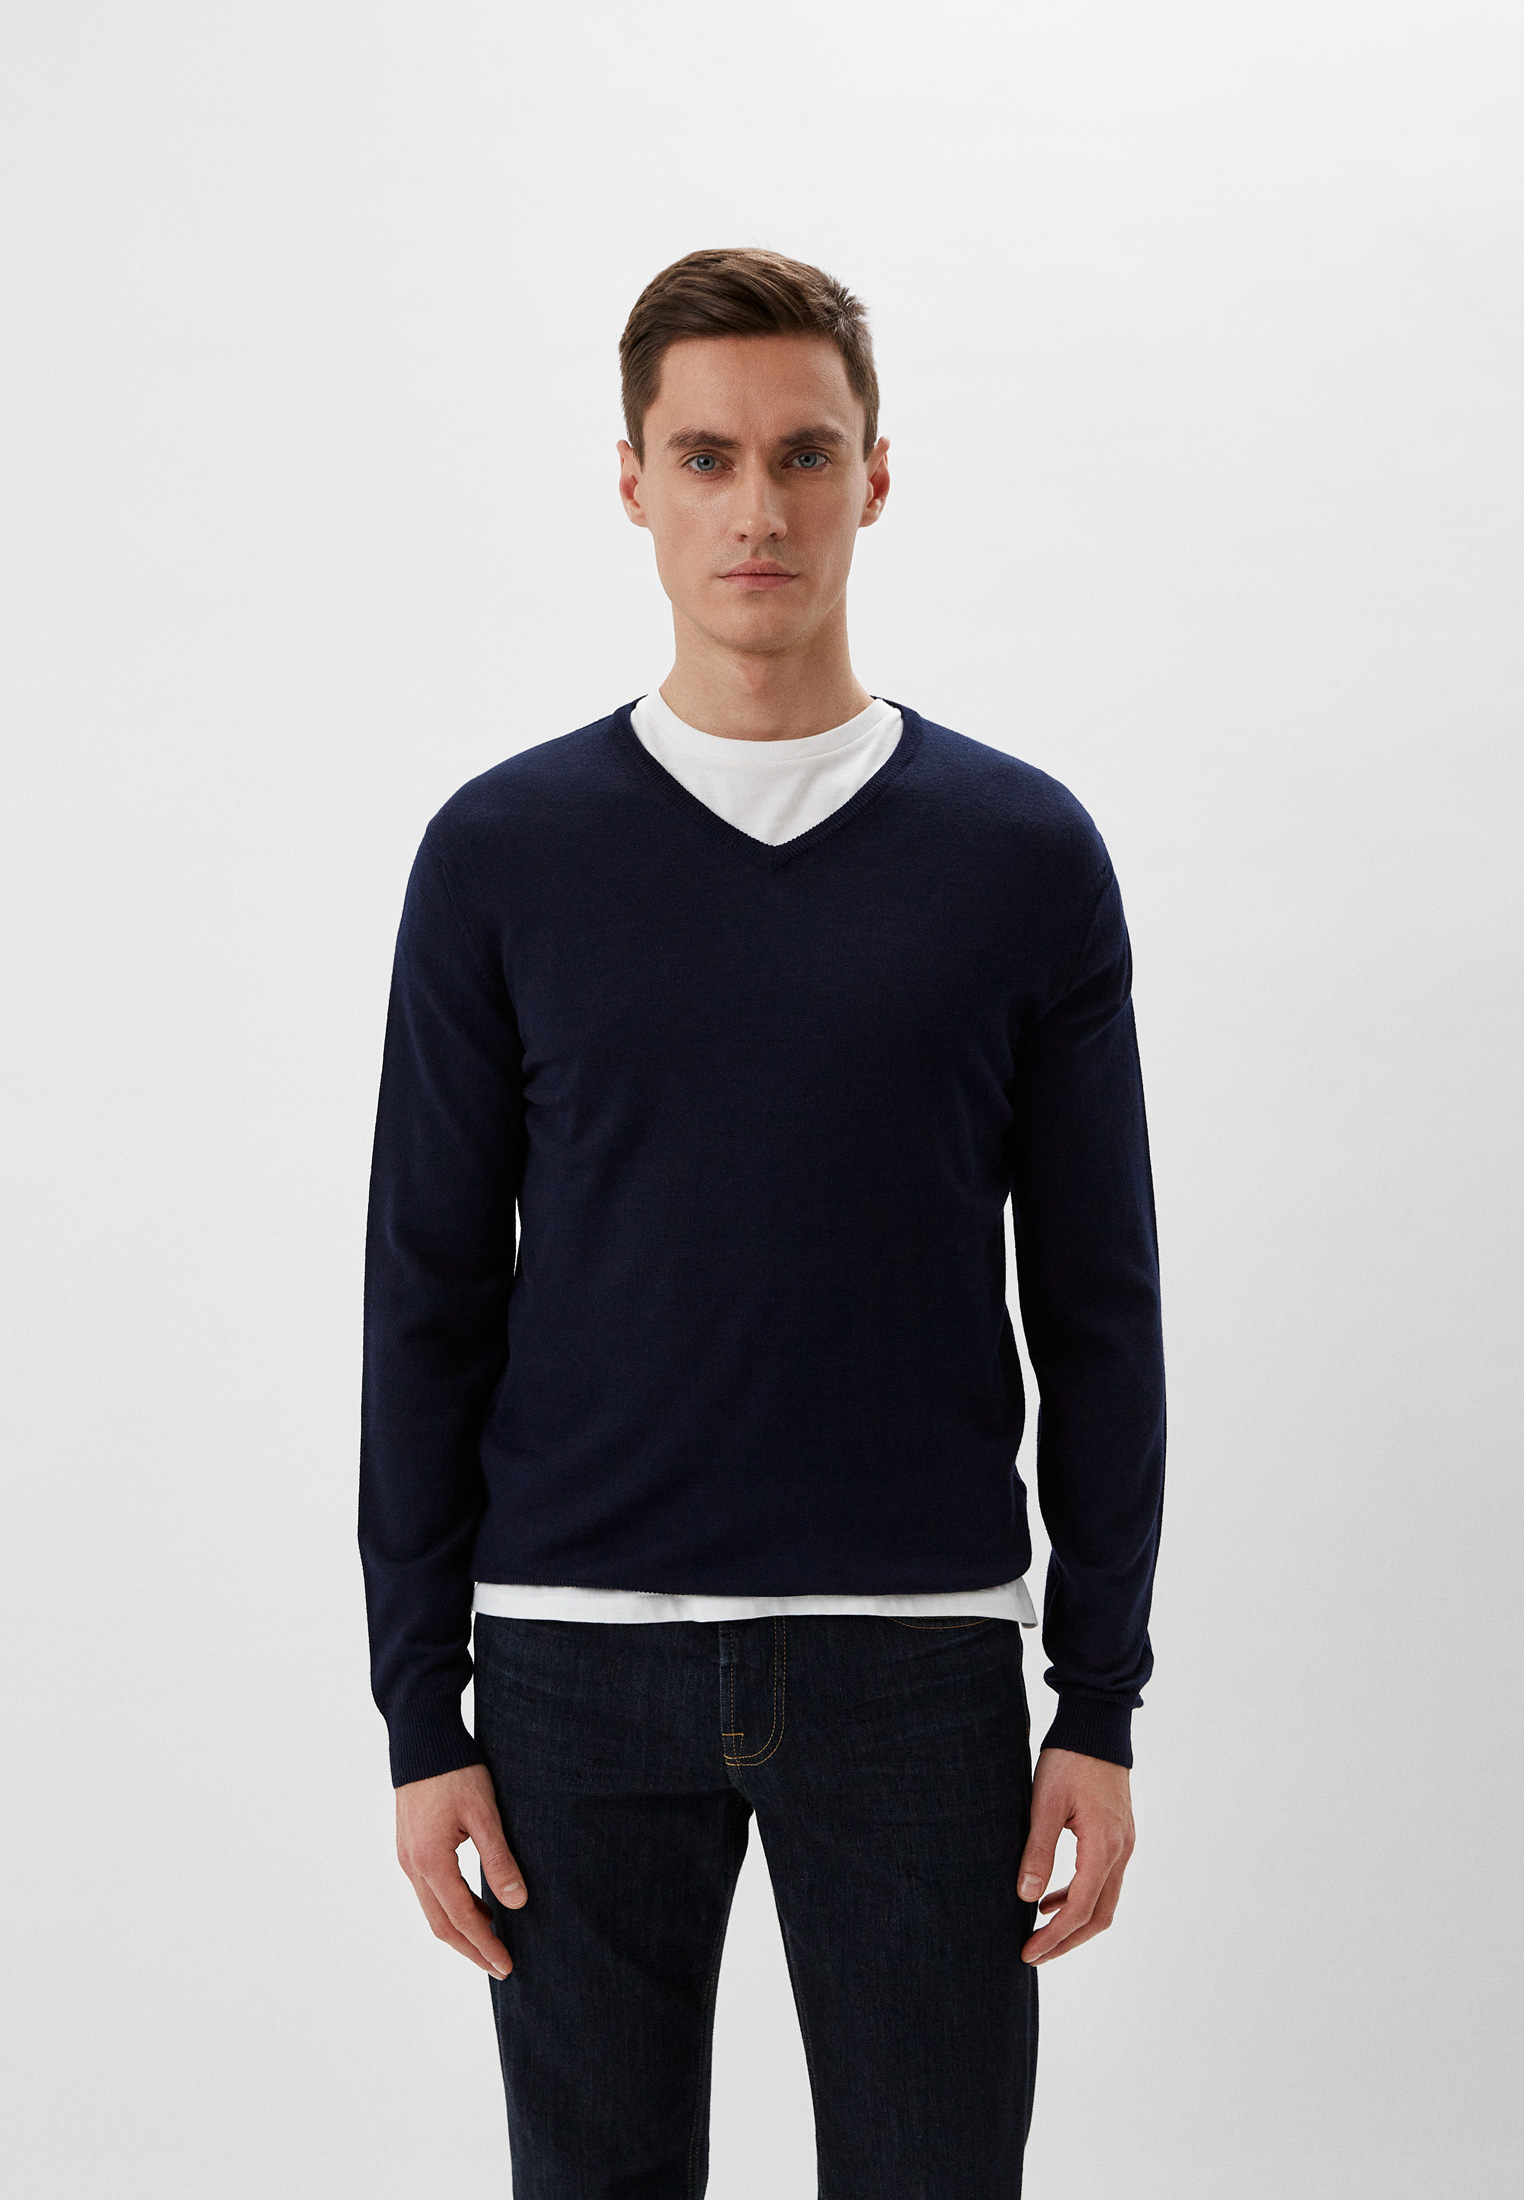 Пуловер Baldinini (Балдинини) MU02: изображение 1